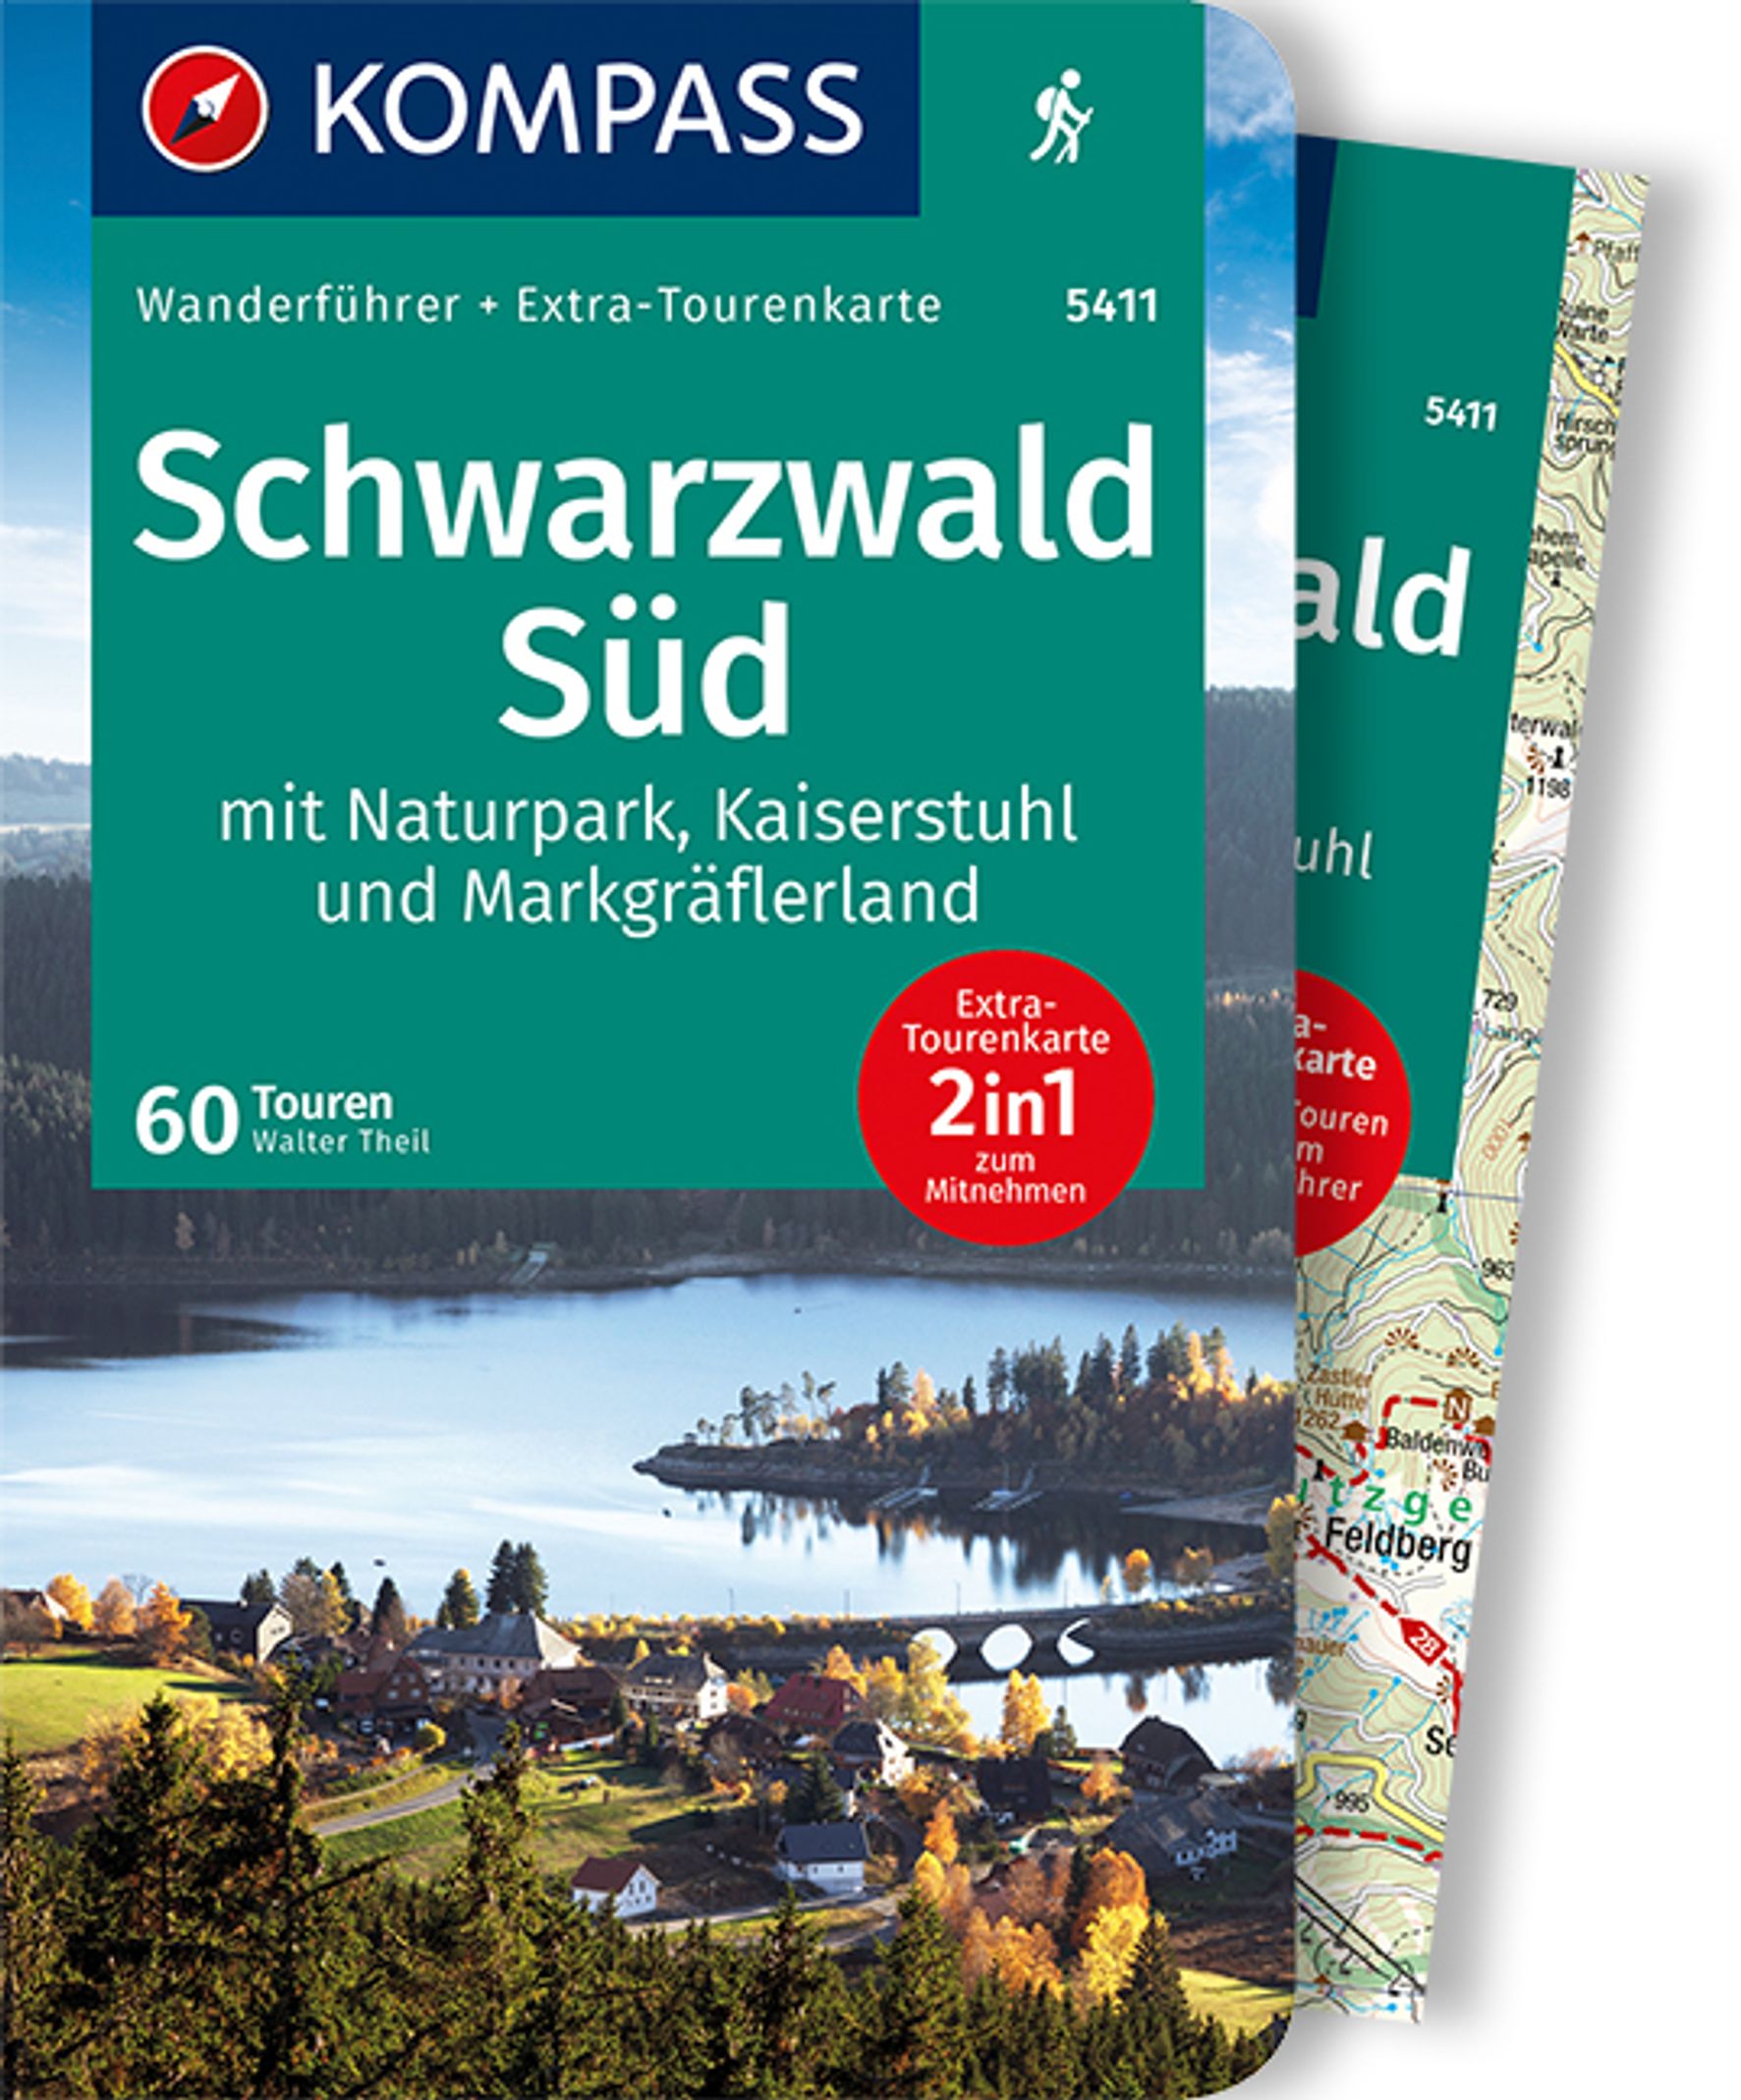 MAIRDUMONT Schwarzwald Süd mit Naturpark, Kaiserstuhl und Markgräflerland, 60 Touren mit Extra-Tourenkarte